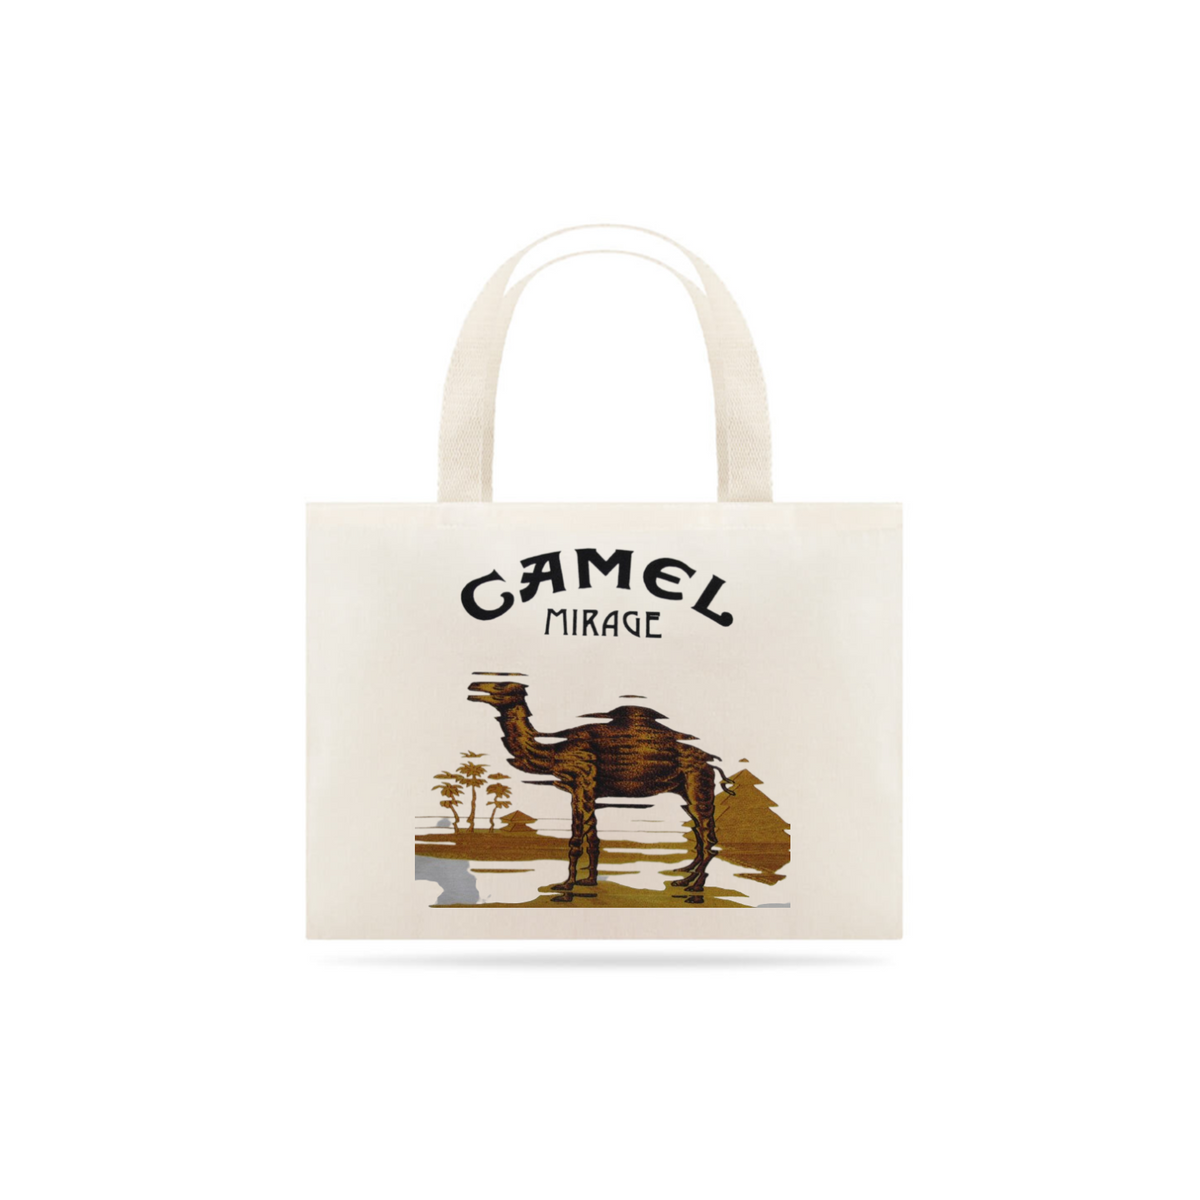 Nome do produto: Camel - Mirage